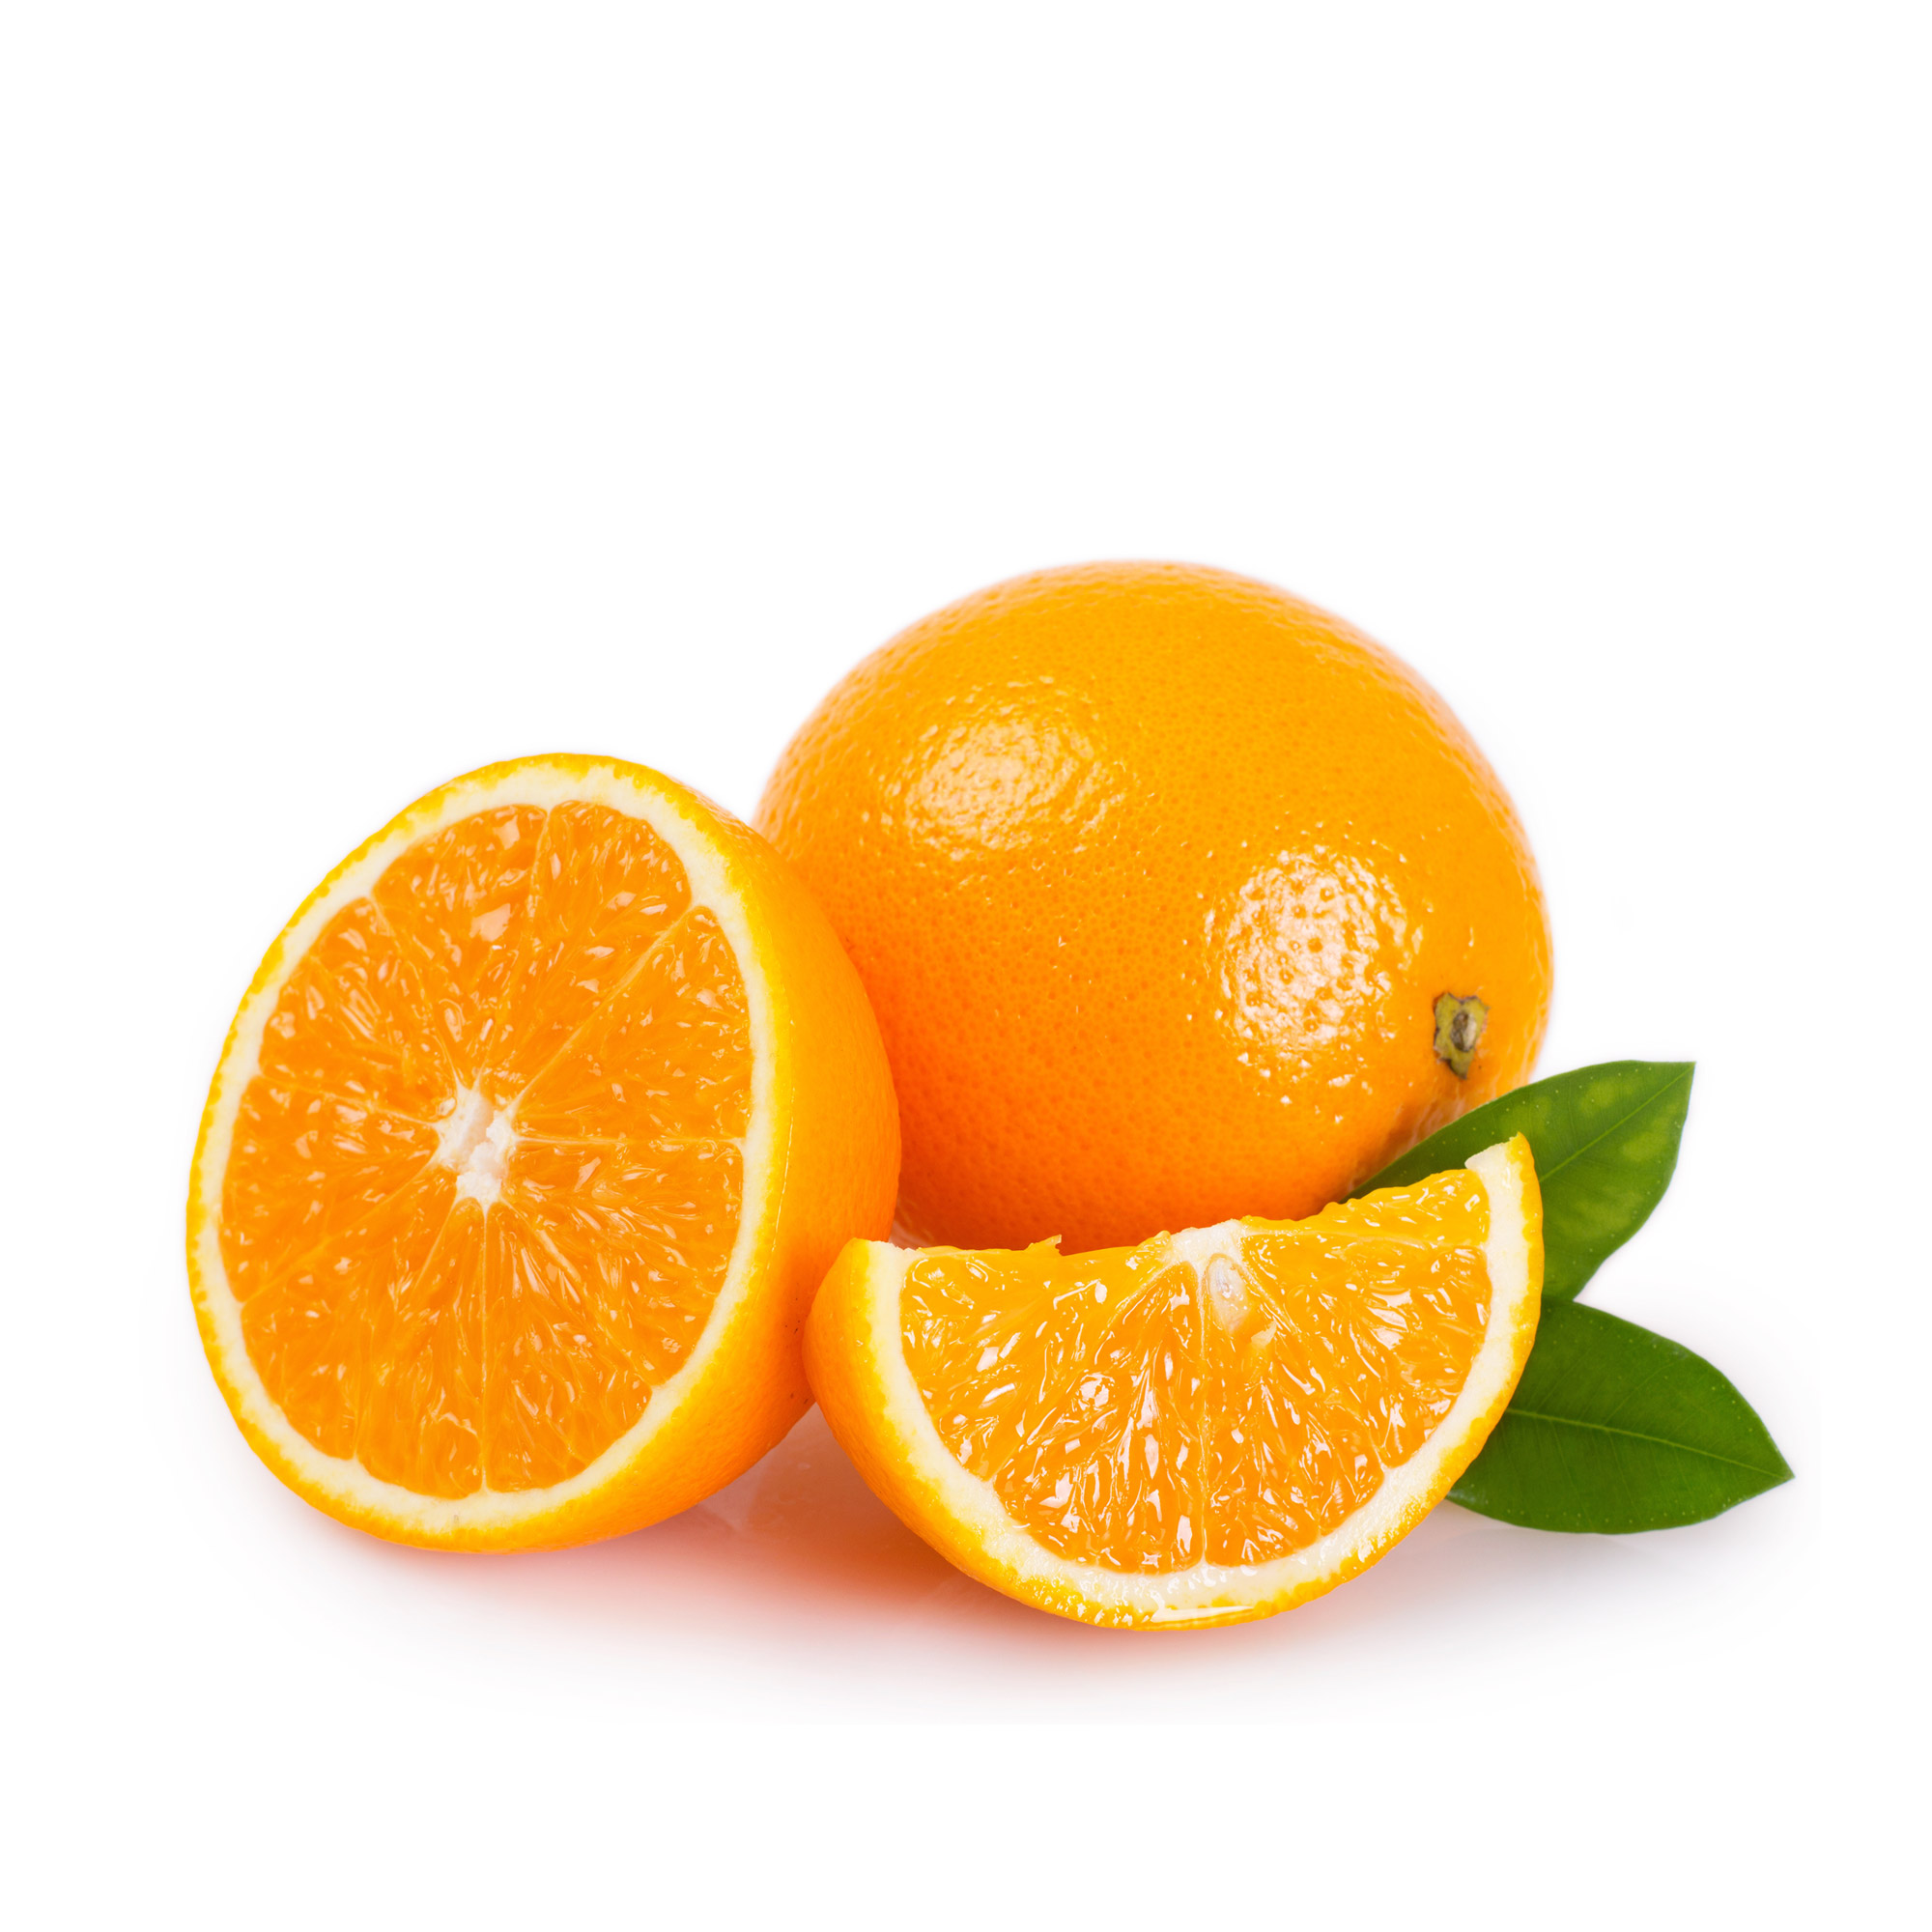 Résultat de recherche d'images pour "oranges"